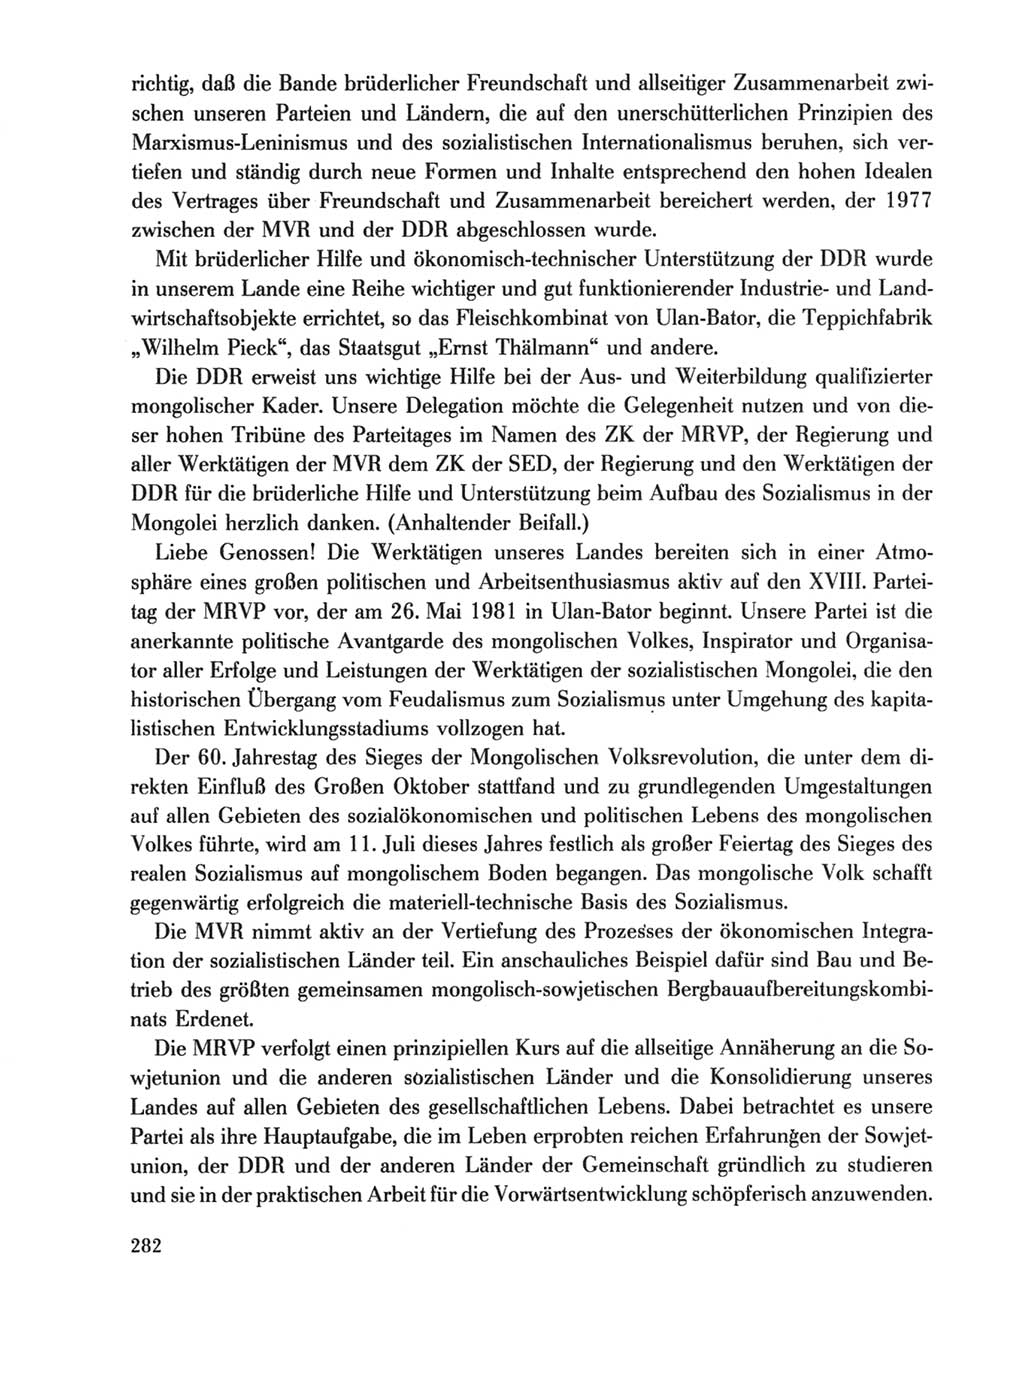 Protokoll der Verhandlungen des Ⅹ. Parteitages der Sozialistischen Einheitspartei Deutschlands (SED) [Deutsche Demokratische Republik (DDR)] 1981, Band 1, Seite 282 (Prot. Verh. Ⅹ. PT SED DDR 1981, Bd. 1, S. 282)